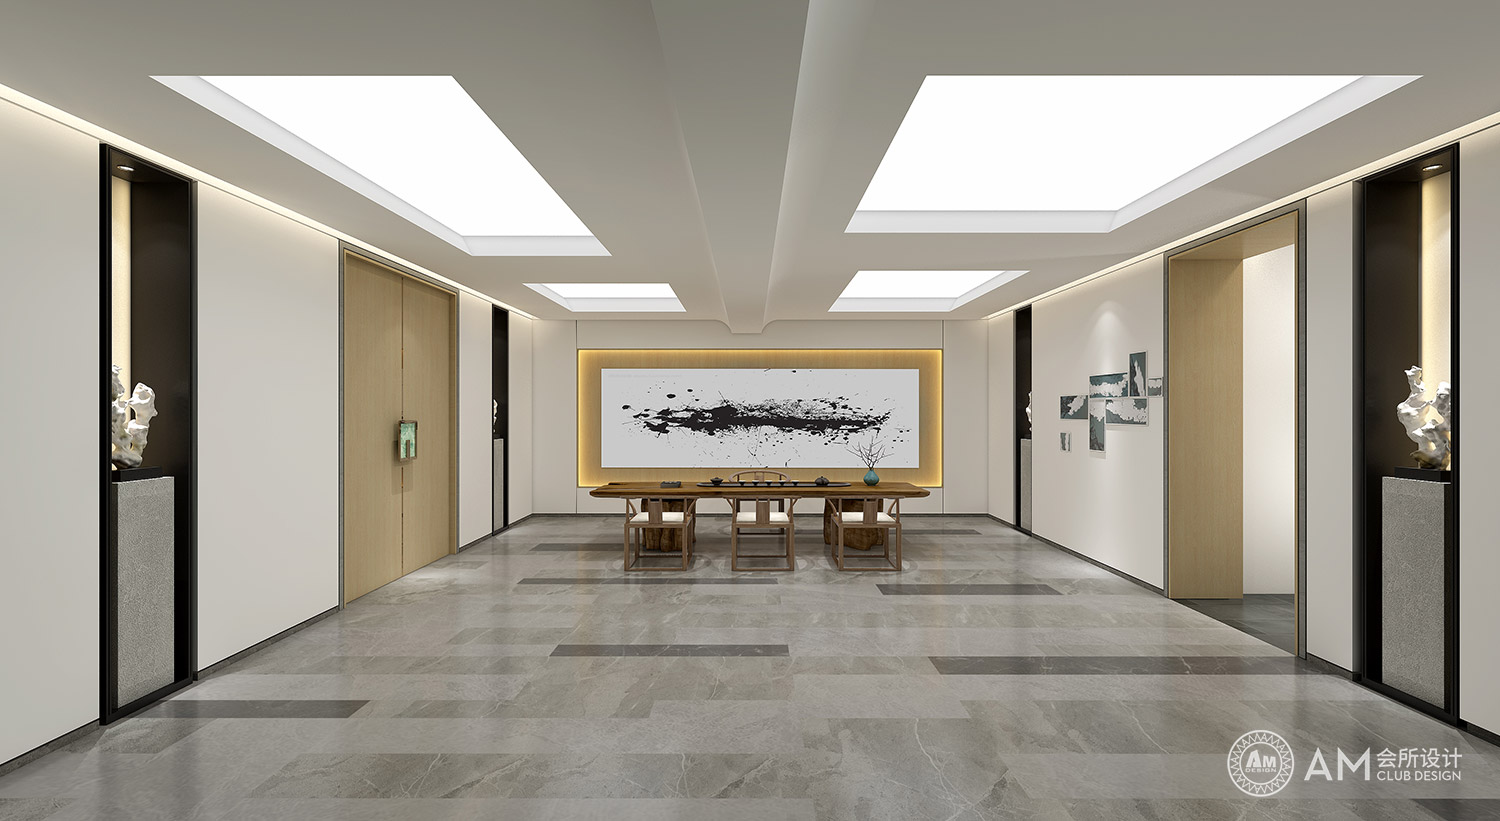 AM设计 | 北京友谊宾馆会所大堂设计